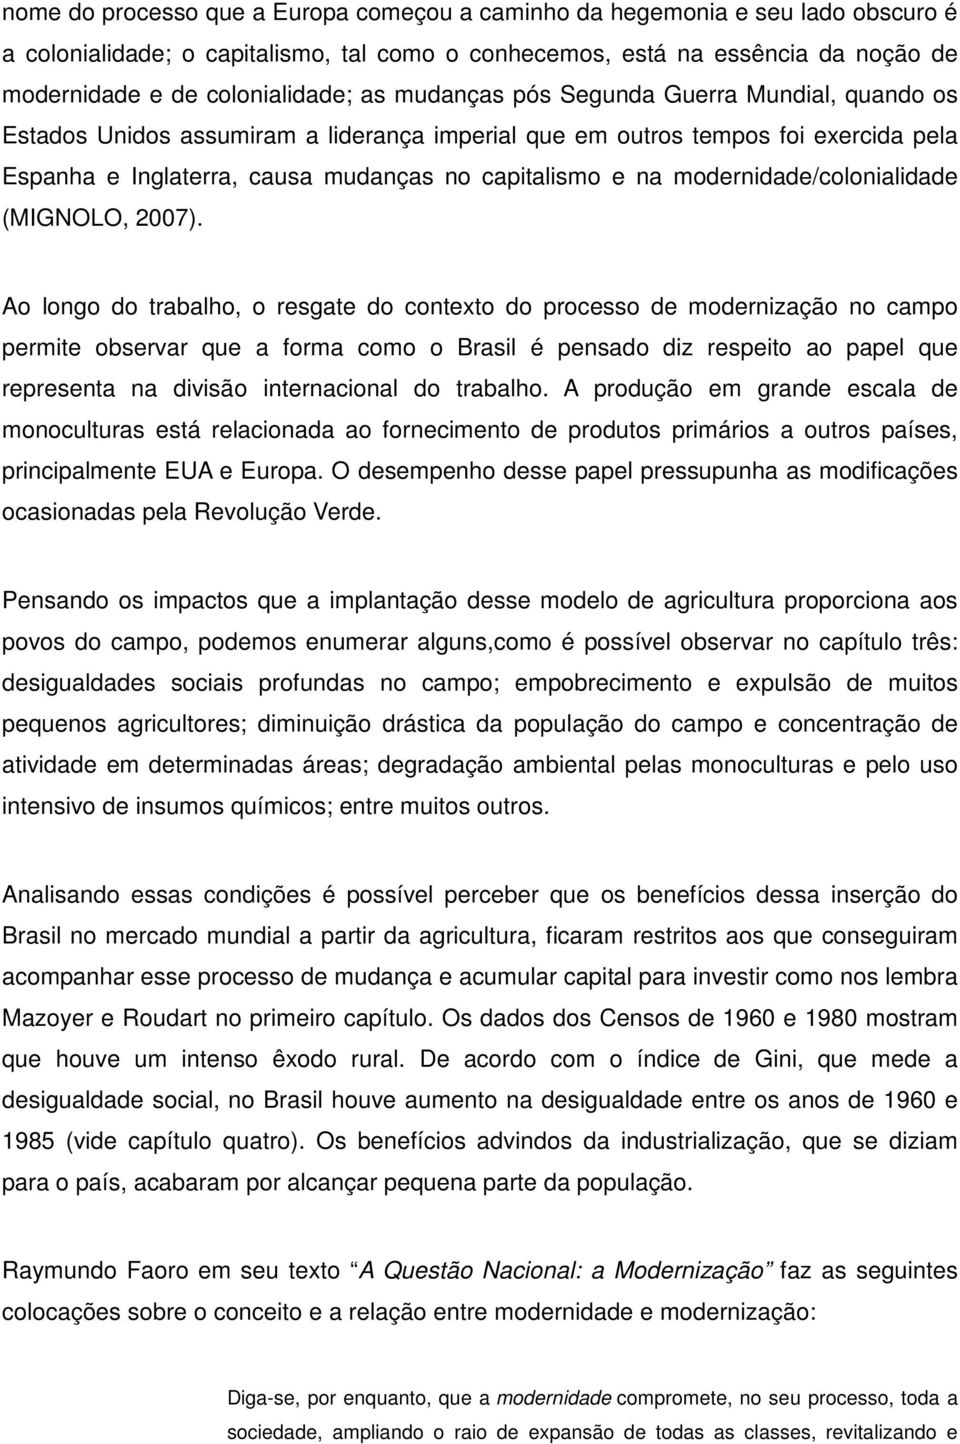 modernidade/colonialidade (MIGNOLO, 2007).